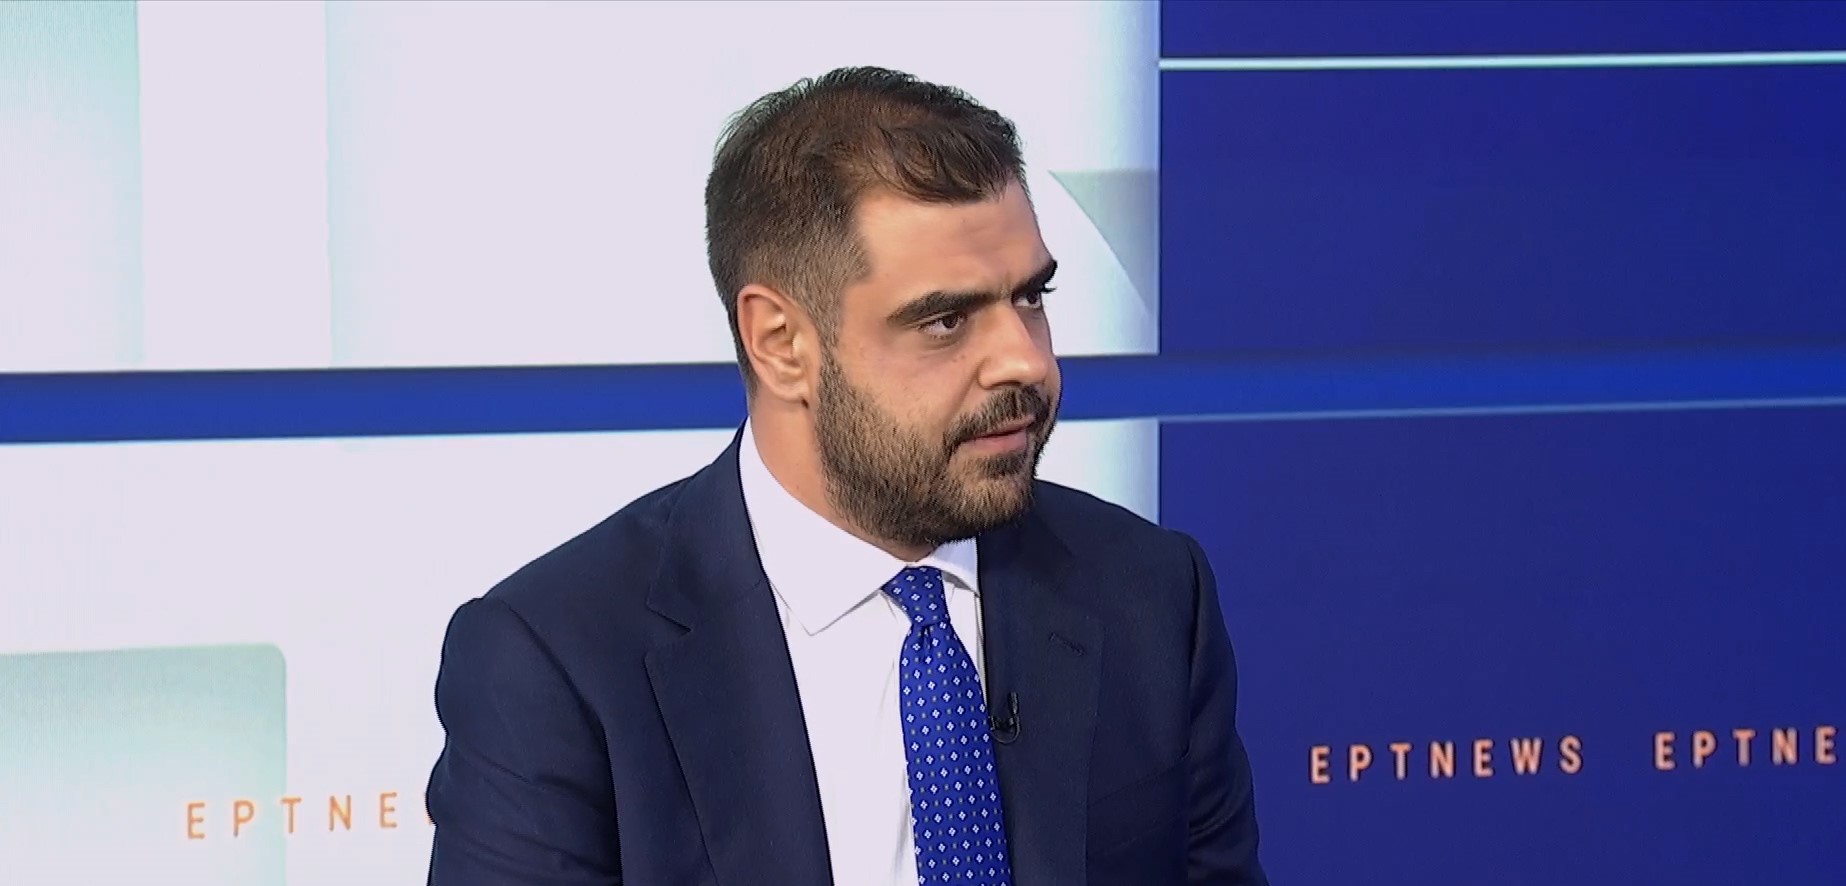 Ο κυβερνητικός εκπρόσωπος, Π. Μαρινάκης στην ΕΡΤ: «Ό,τι έχουμε πει προεκλογικά ισχύει στο ακέραιο»